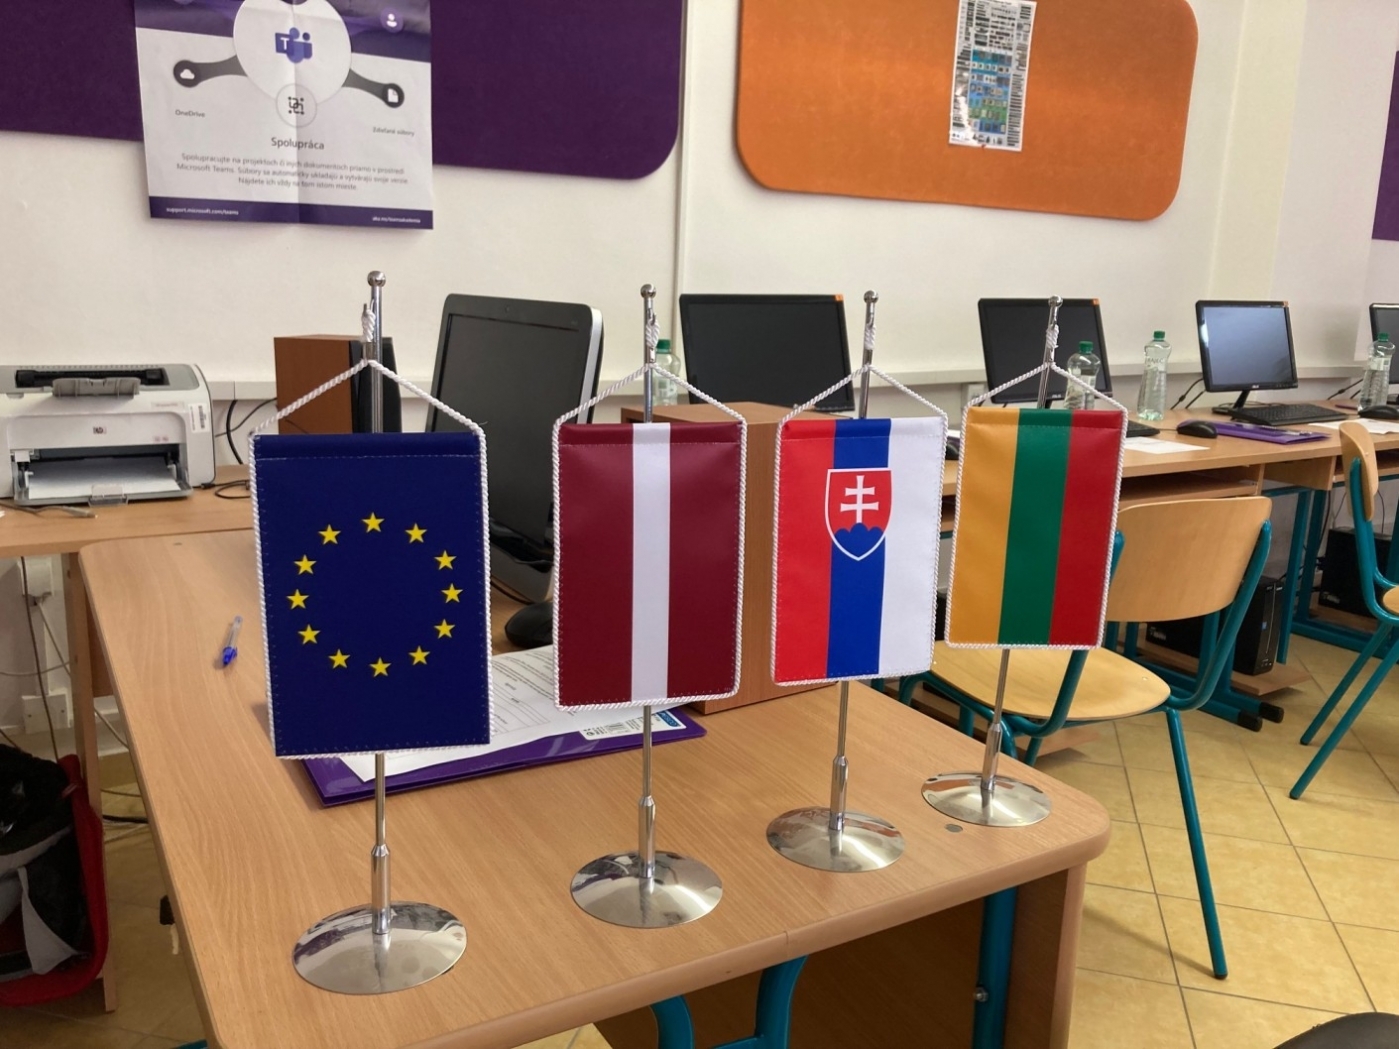 Zaļenieku komerciālās un amatniecības vidusskolas profesionālo izglītības programmu pedagogi Slovākijā apguva neformālās izglītības metodes